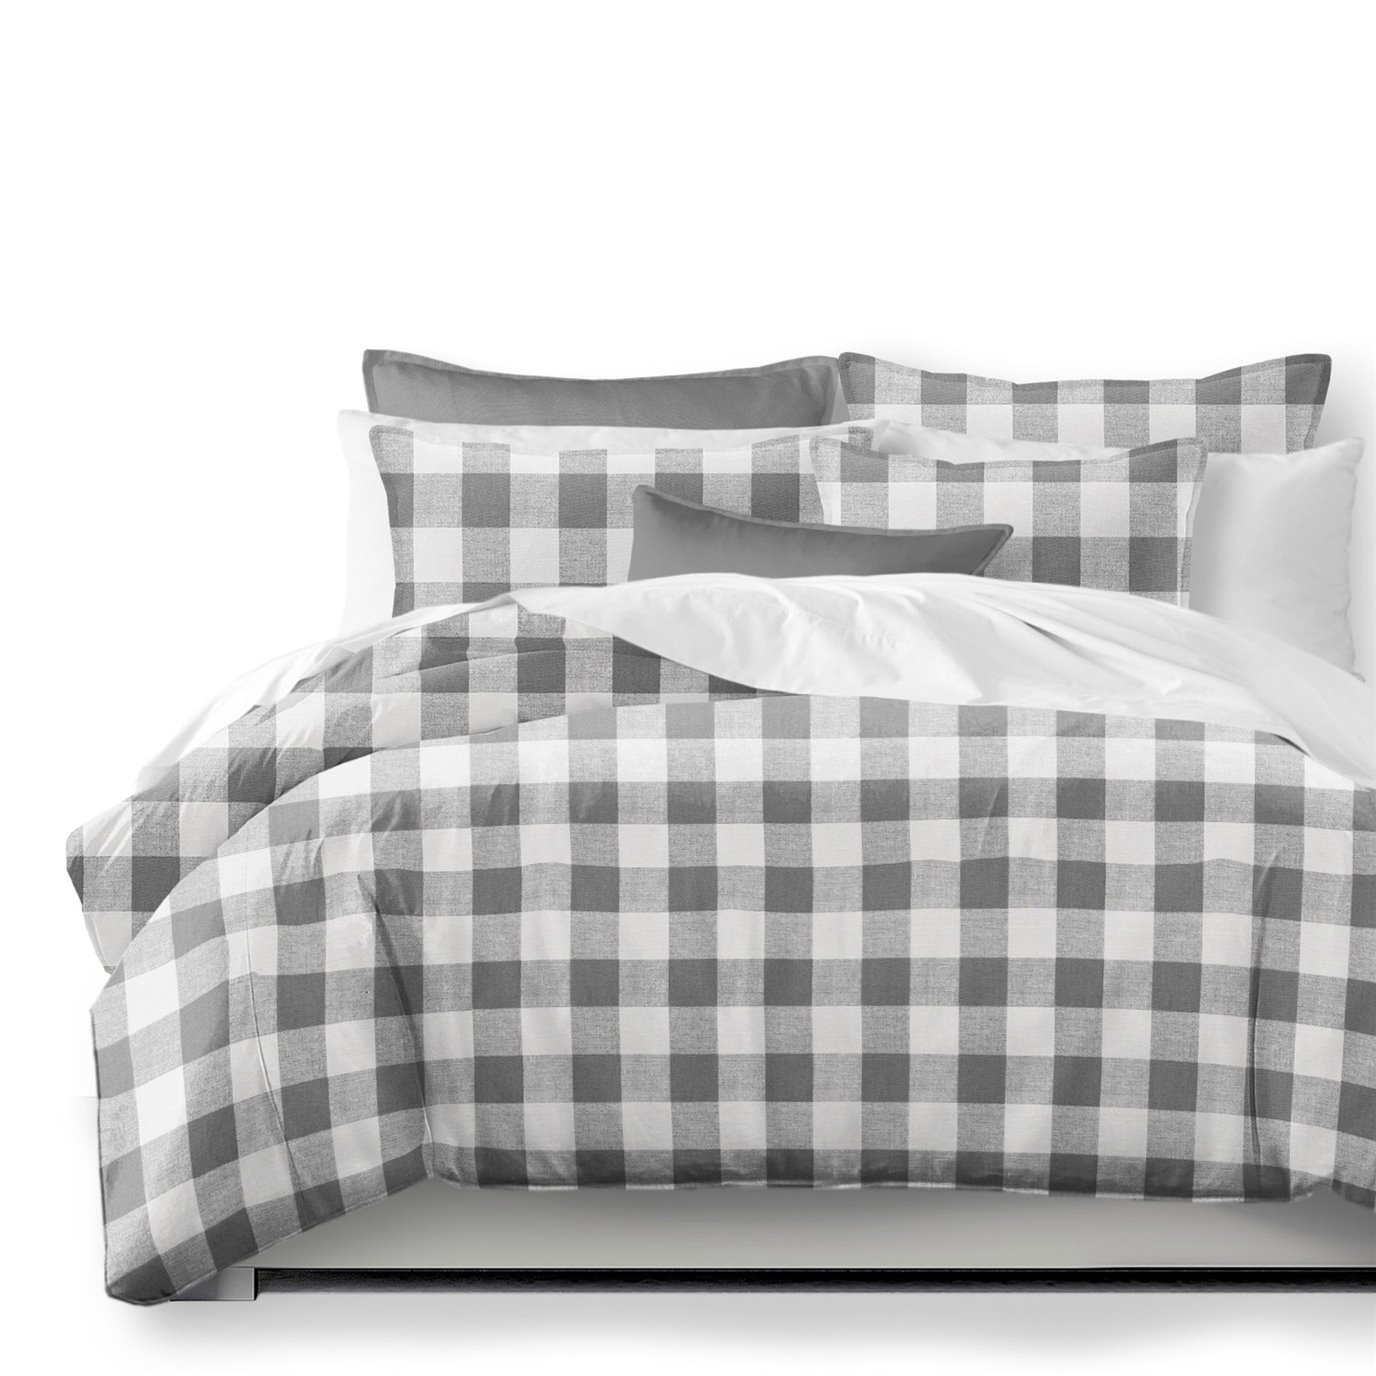 Lumberjack Check Gray/White Duvet Cover and Pillow Sham(s) Set - Size Super King